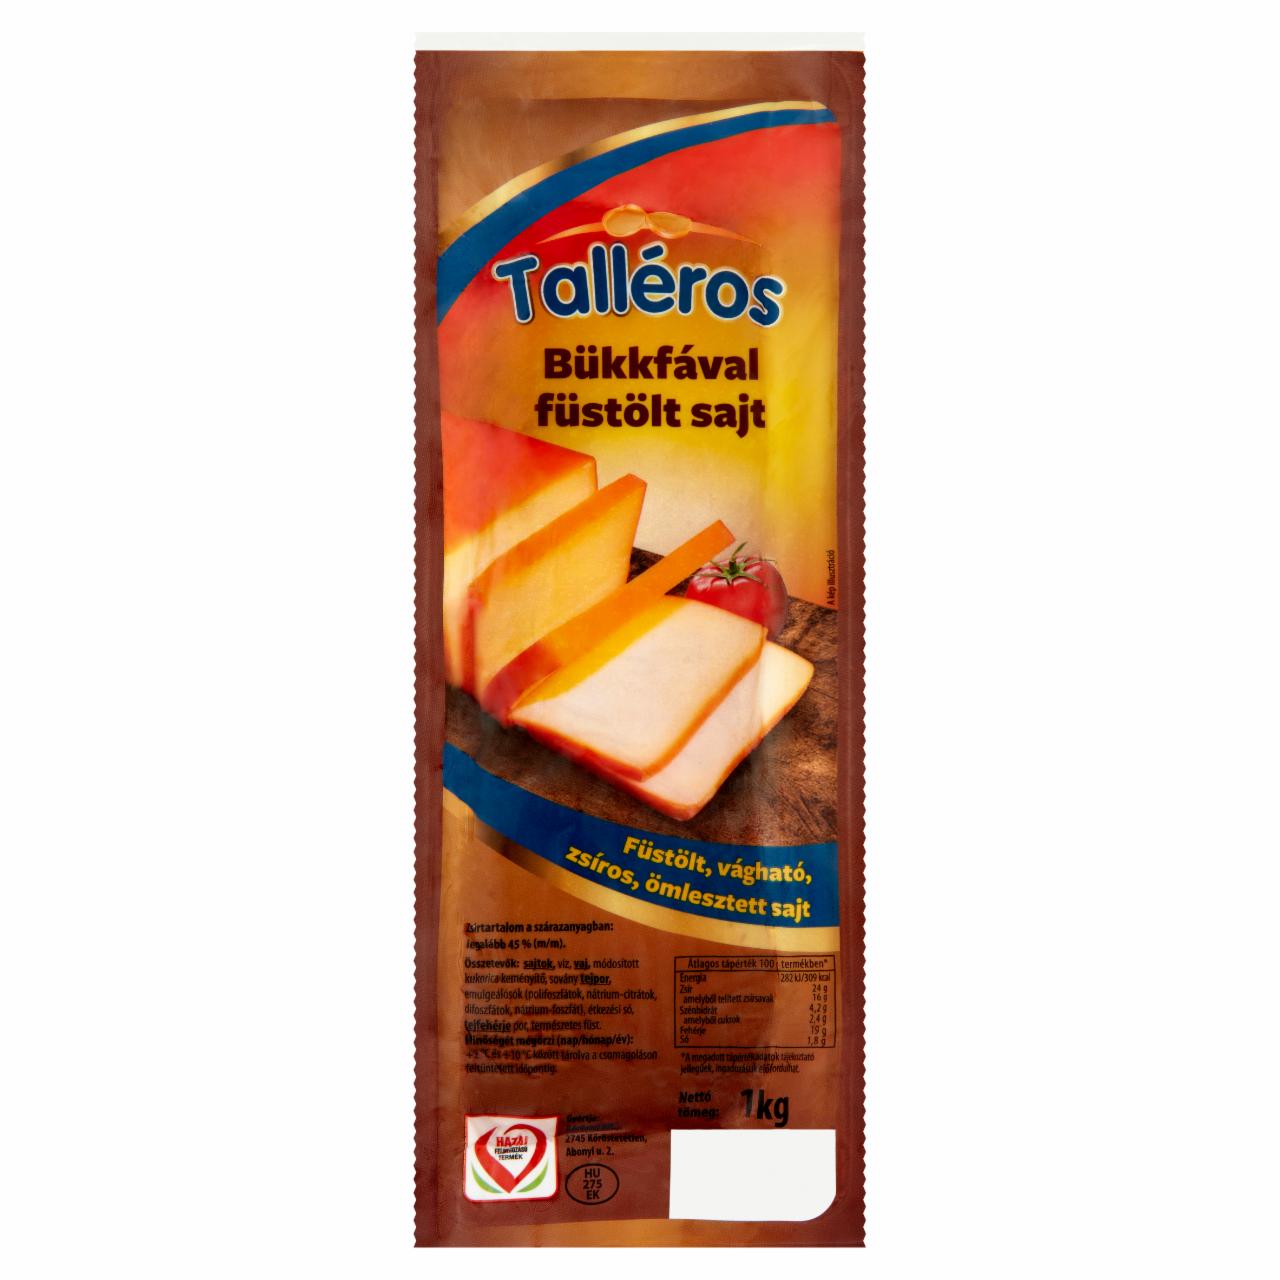 Képek - Talléros bükkfával füstölt, vágható, zsíros, ömlesztett sajt 1 kg